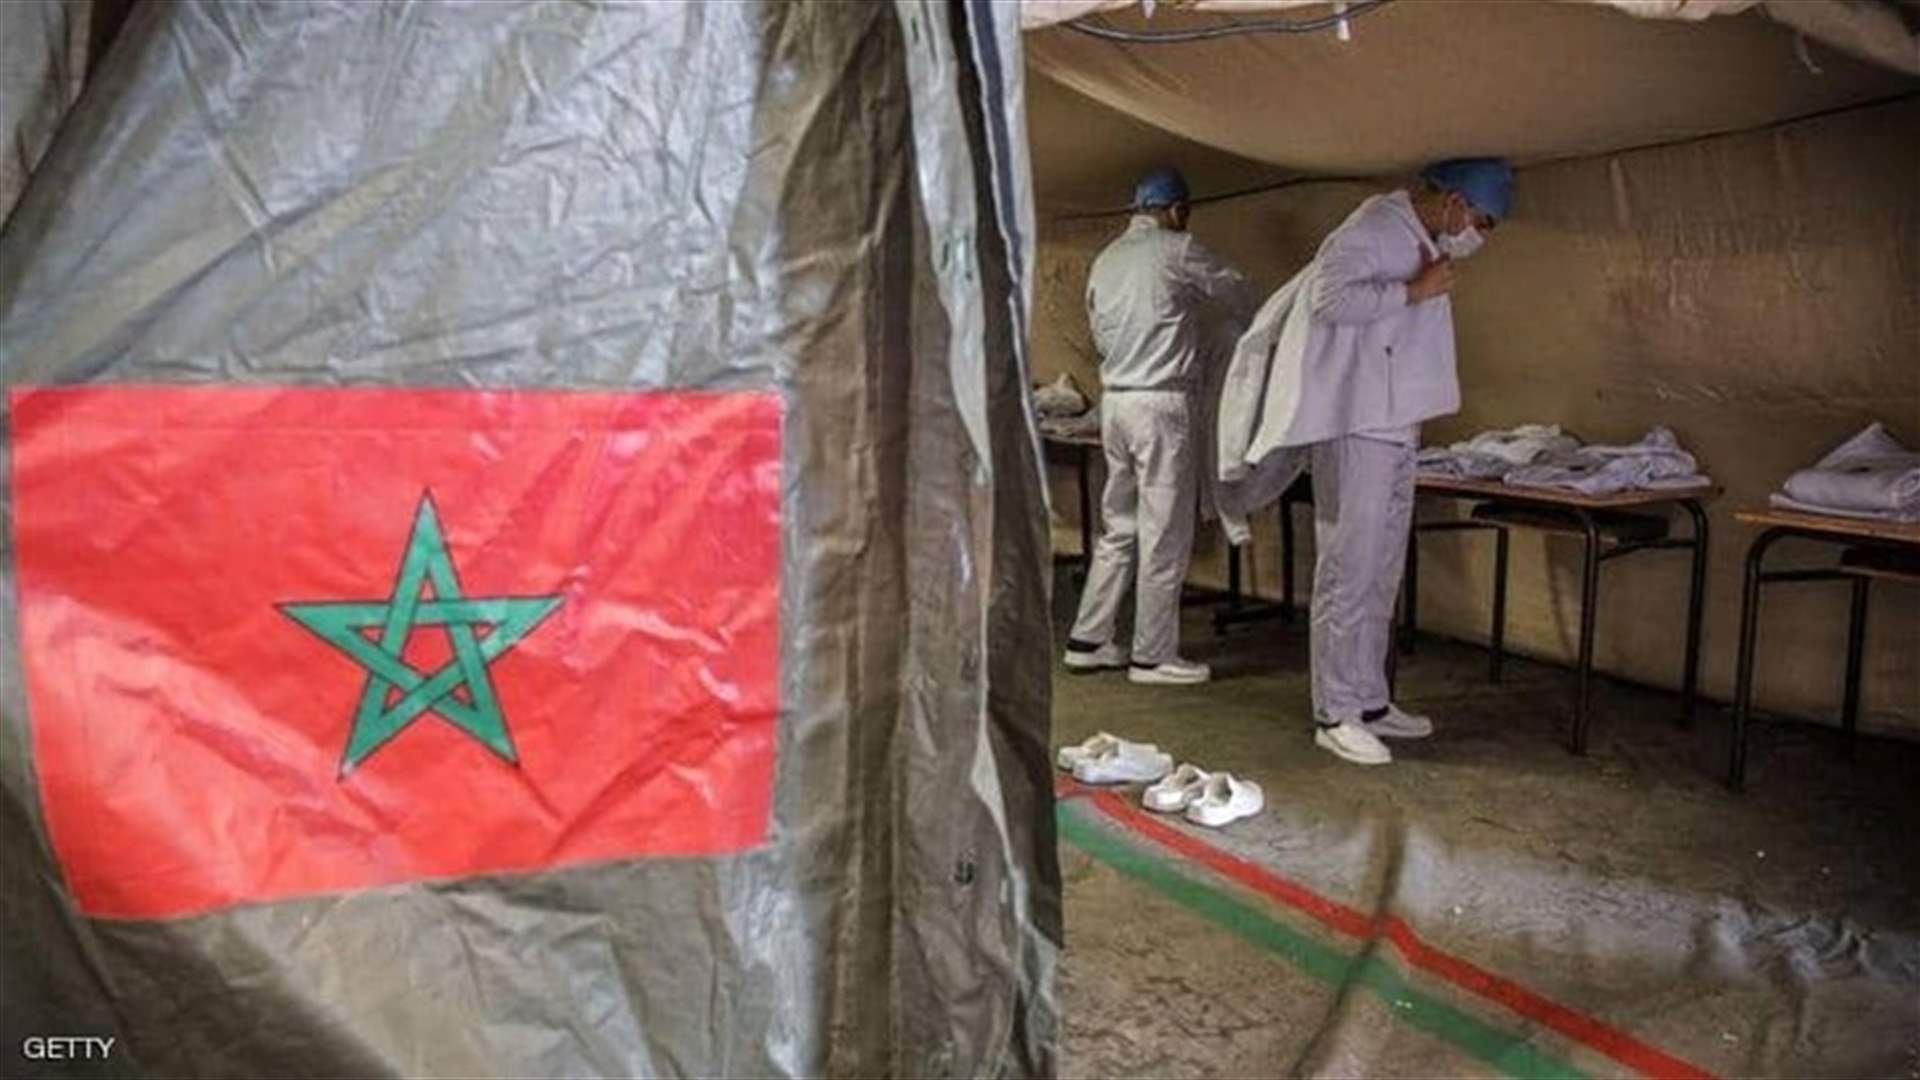 4434 إصابة جديدة بفيروس كورونا في المغرب و78 وفاة خلال 24 ساعة